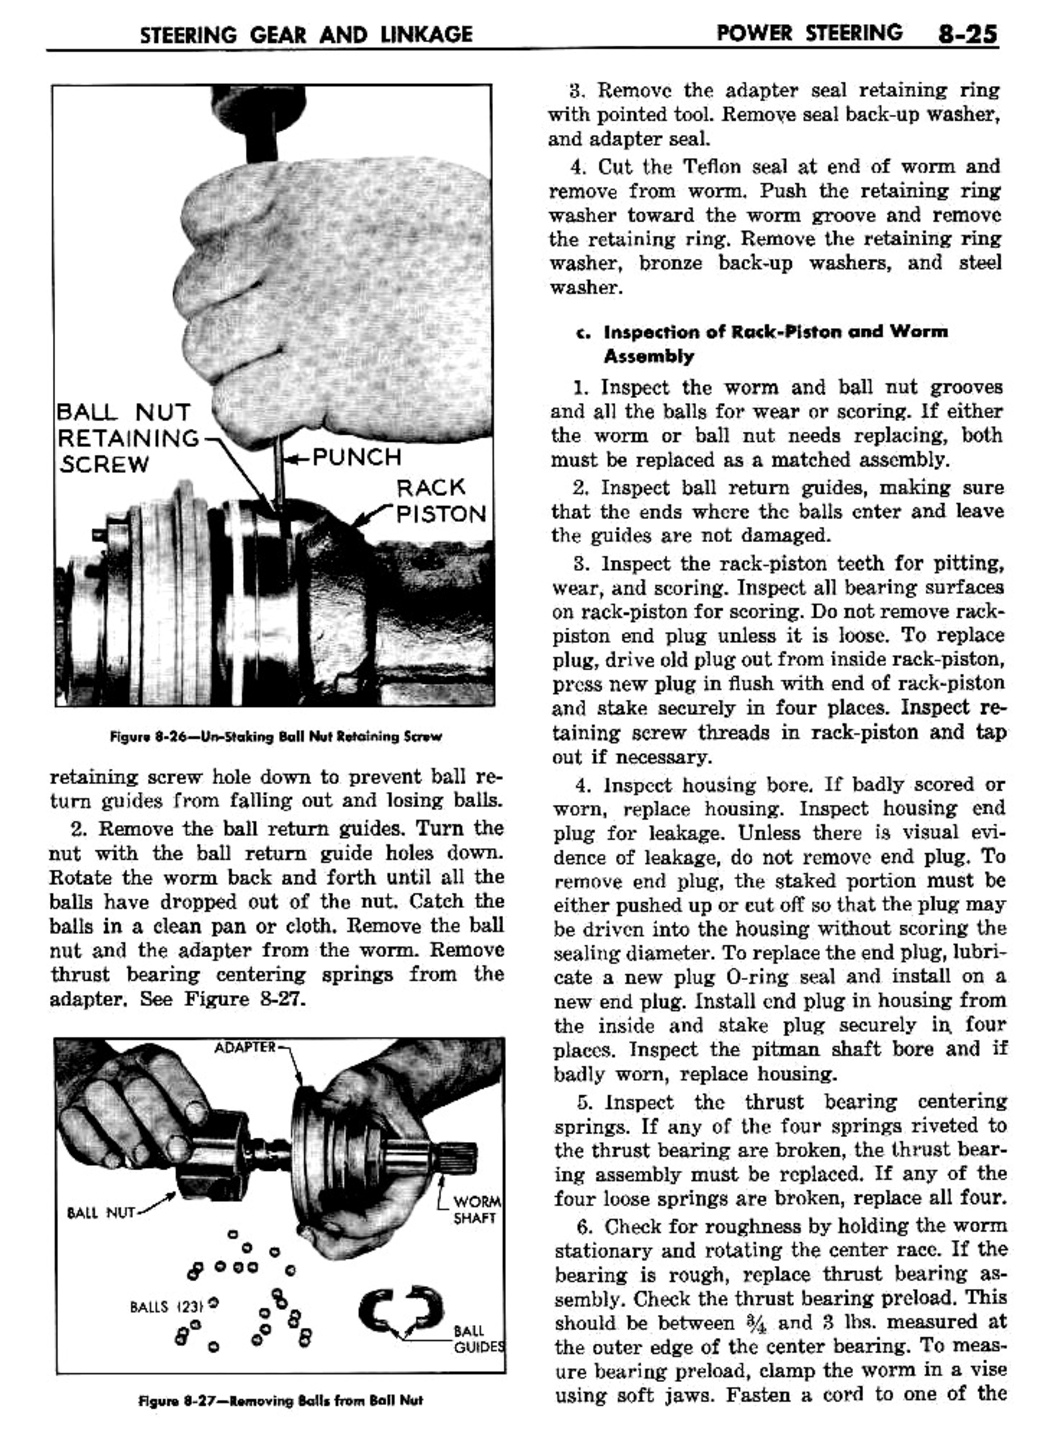 n_09 1957 Buick Shop Manual - Steering-025-025.jpg